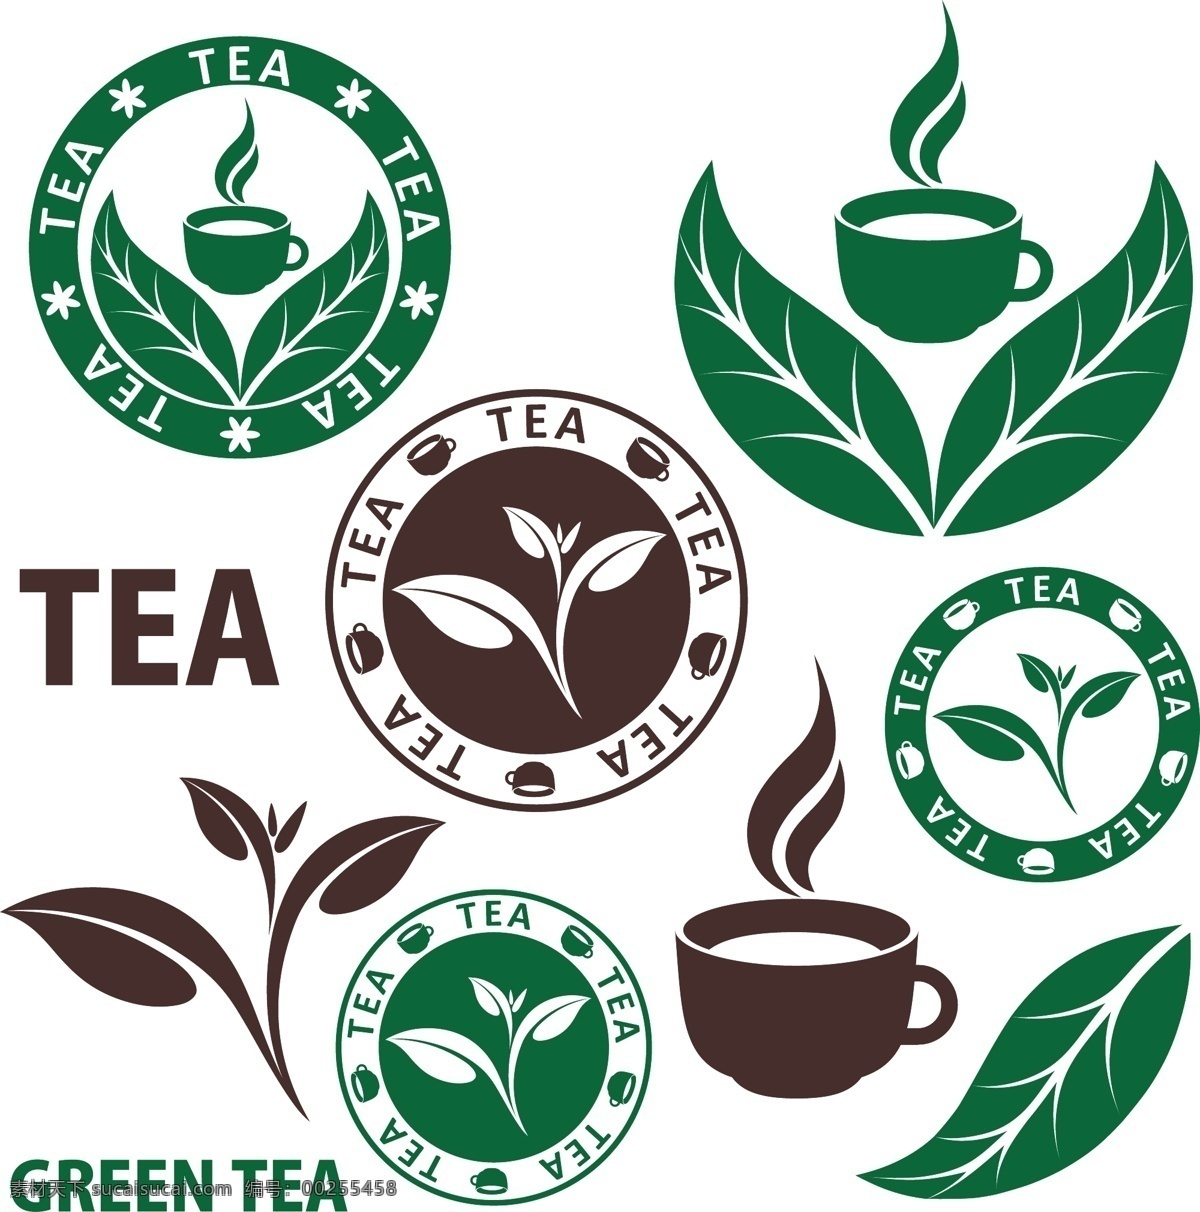 绿茶 茶水 茶水清茶 清茶 柠檬茶 茶杯 咖啡 绿叶 绿茶叶 红茶 手绘 矢量 餐饮美食 生活百科 餐饮美食素材